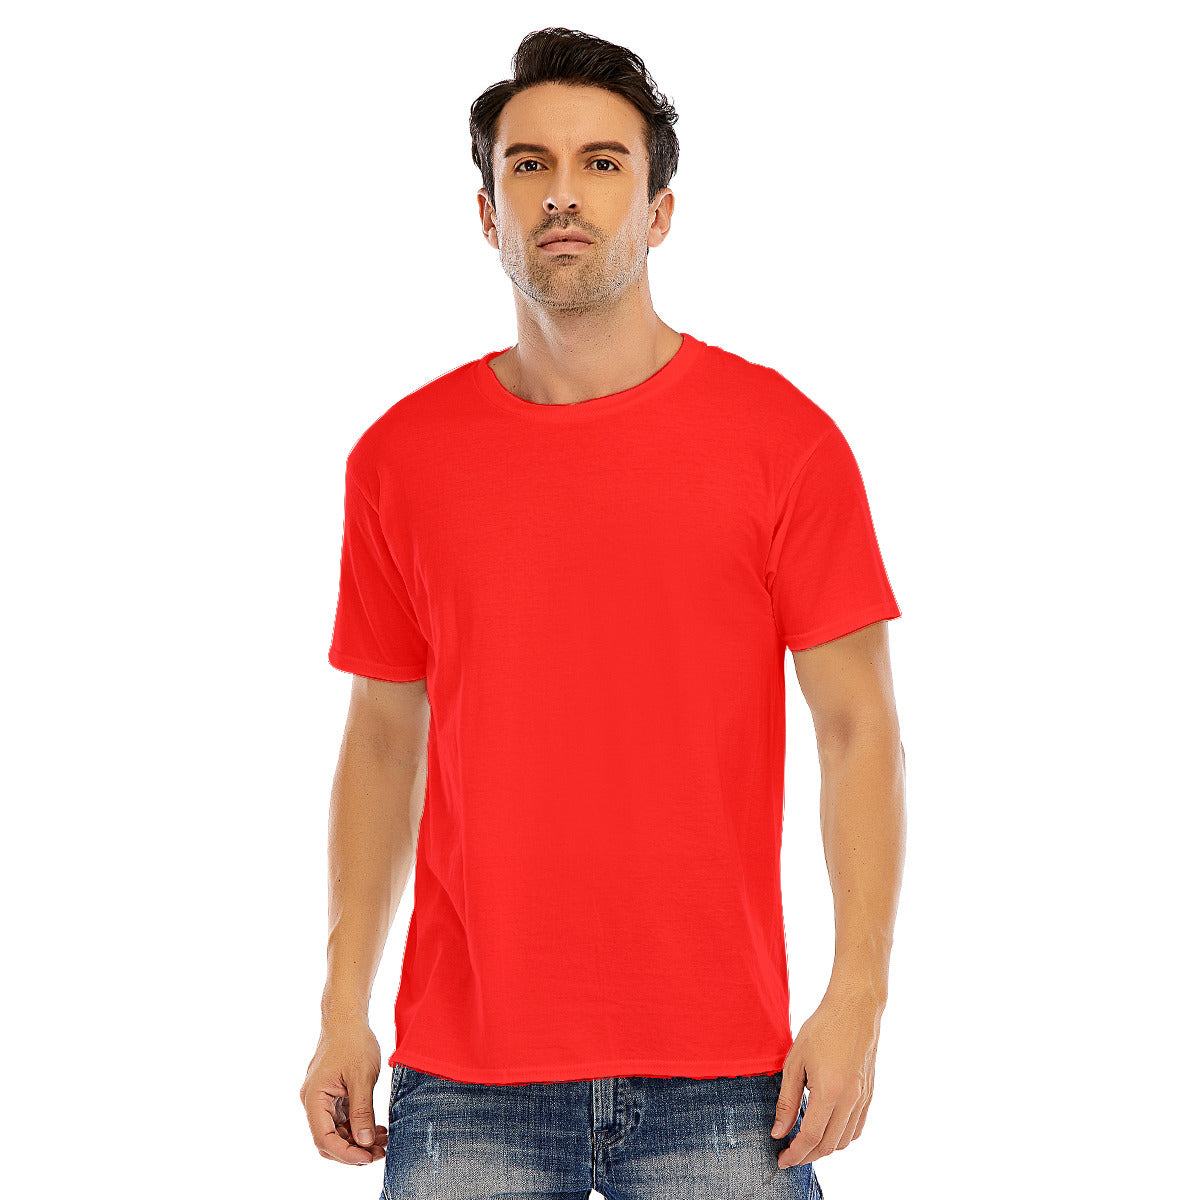 Stripes 106 -- Unisex O-neck Short Sleeve T-shirt